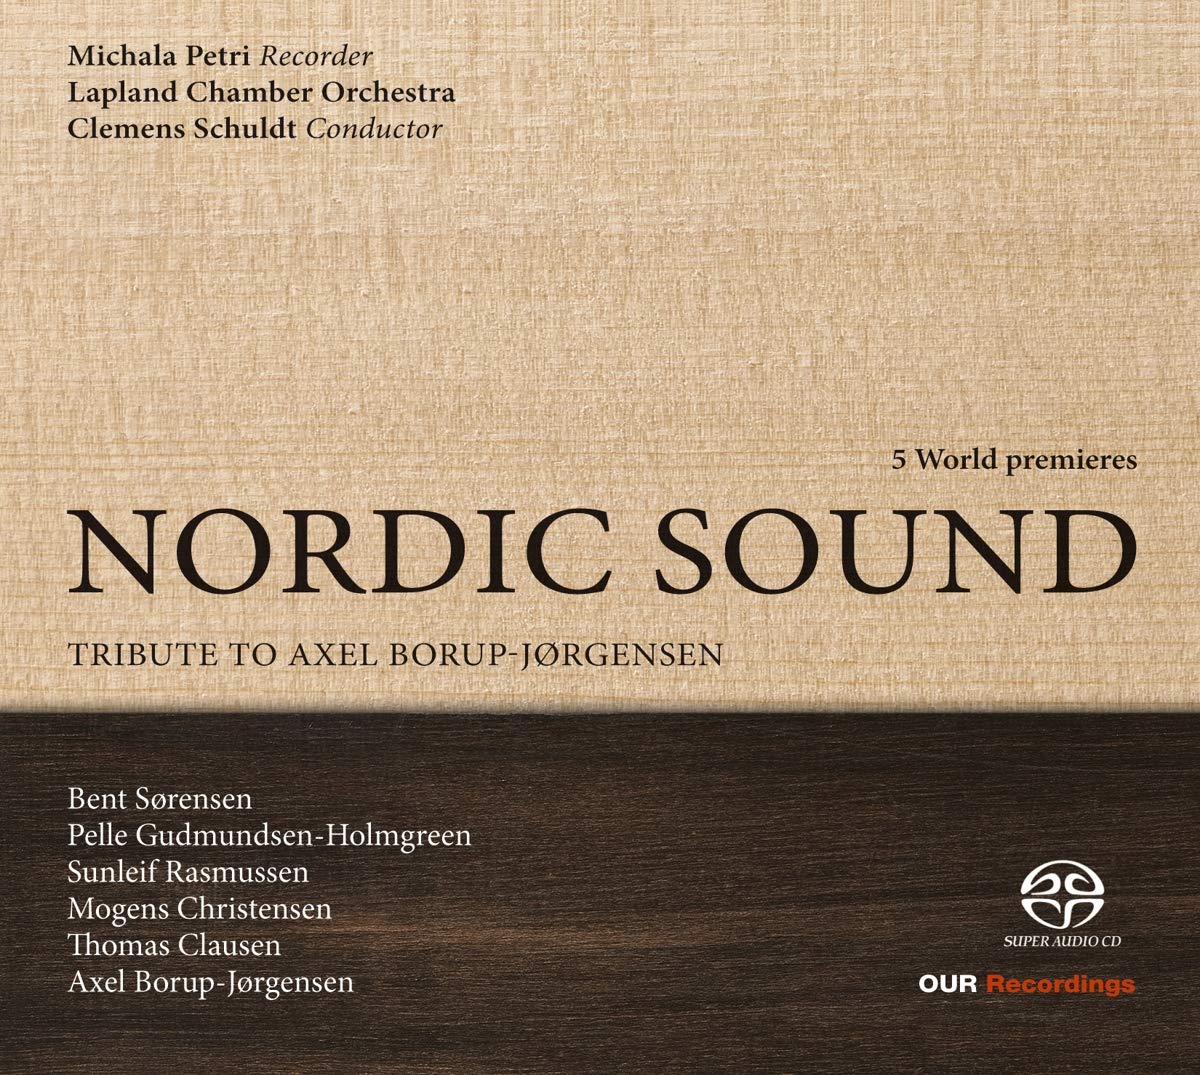 Nordic Sound